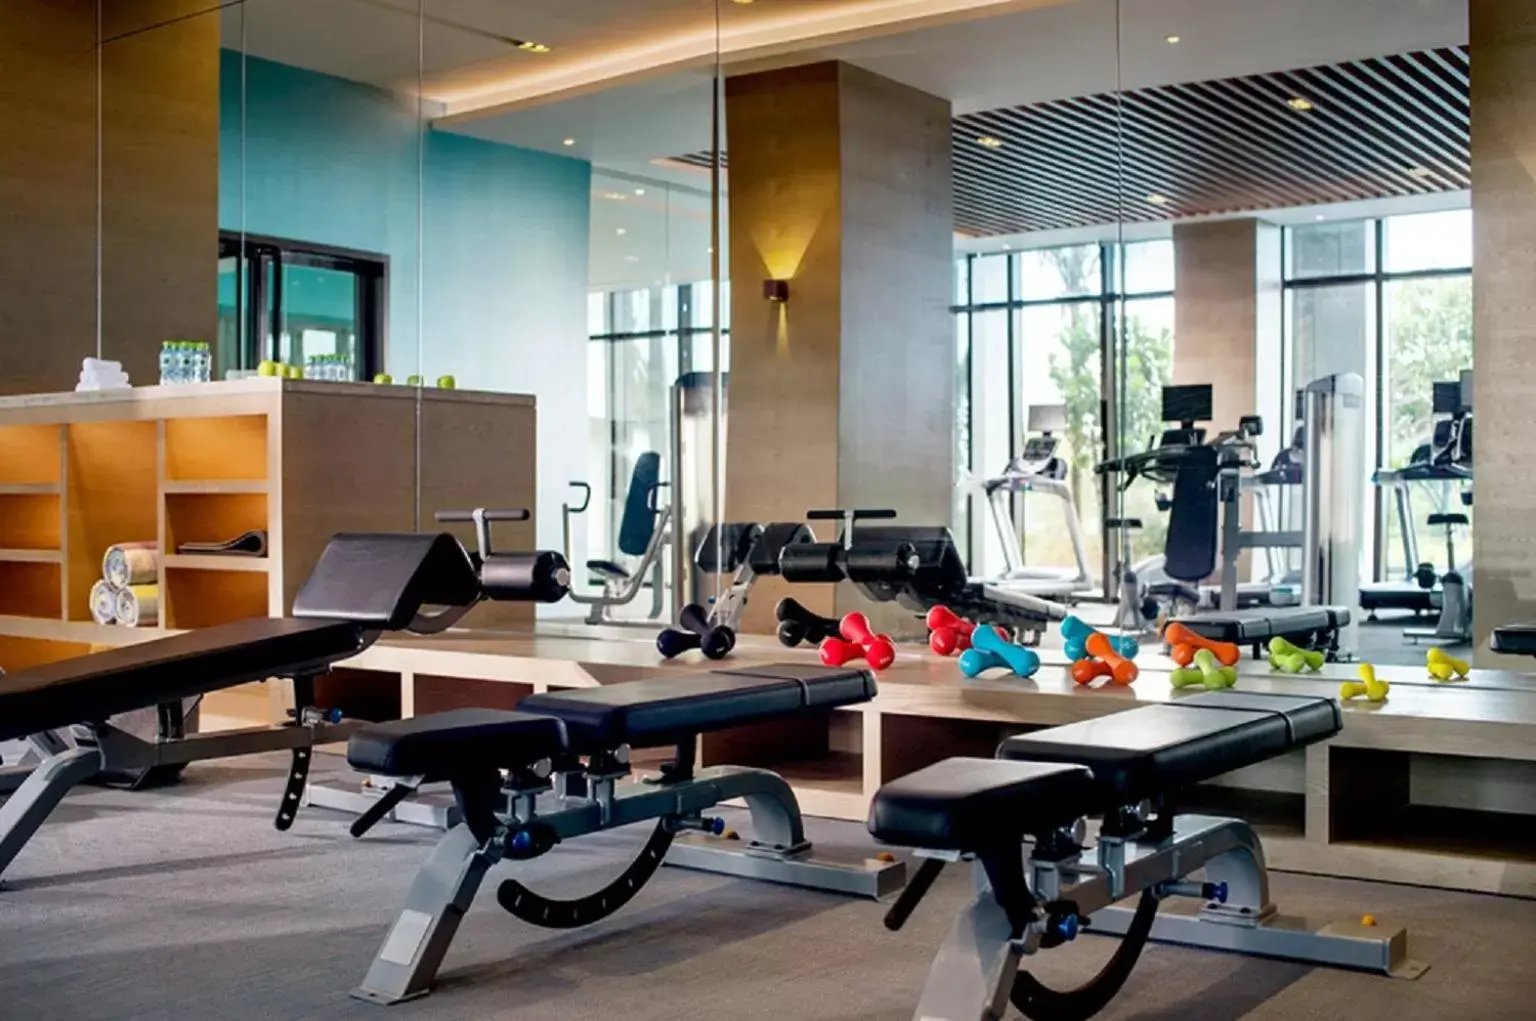 Fitness centre/facilities, Fitness Center/Facilities in Sofitel Sanya Leeman Resort